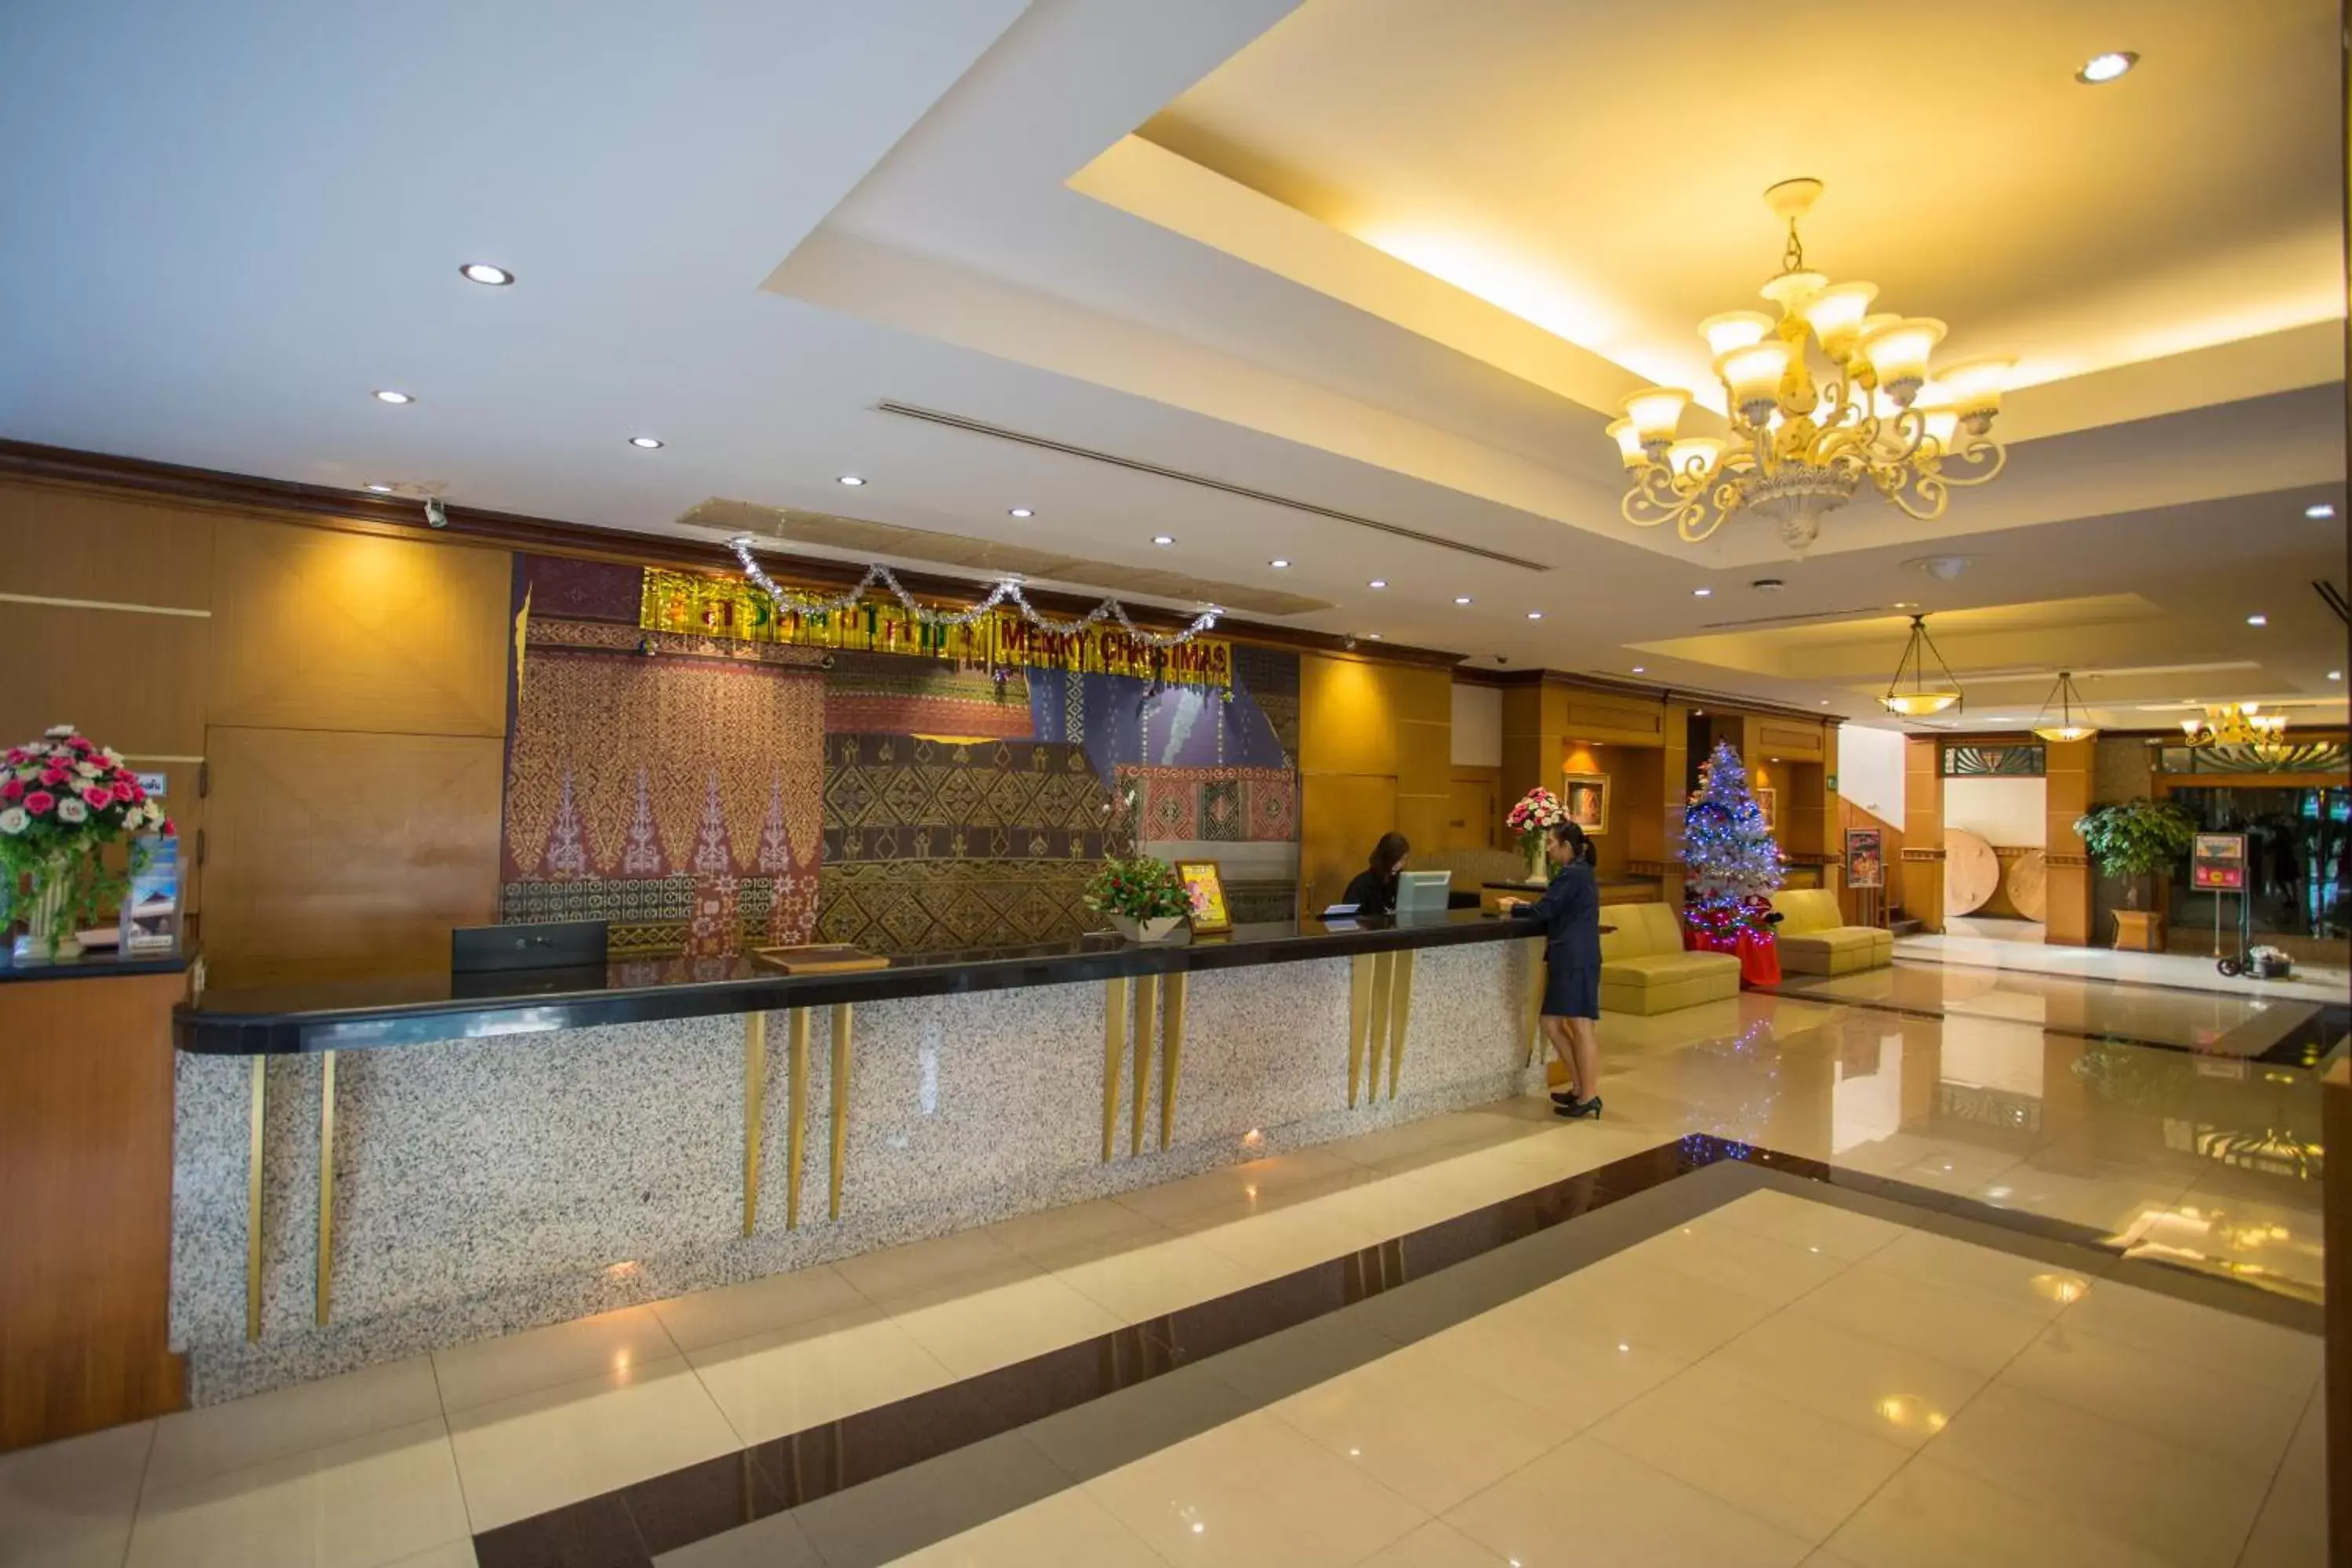 Lobby or reception, Lobby/Reception in Seeharaj Hotel